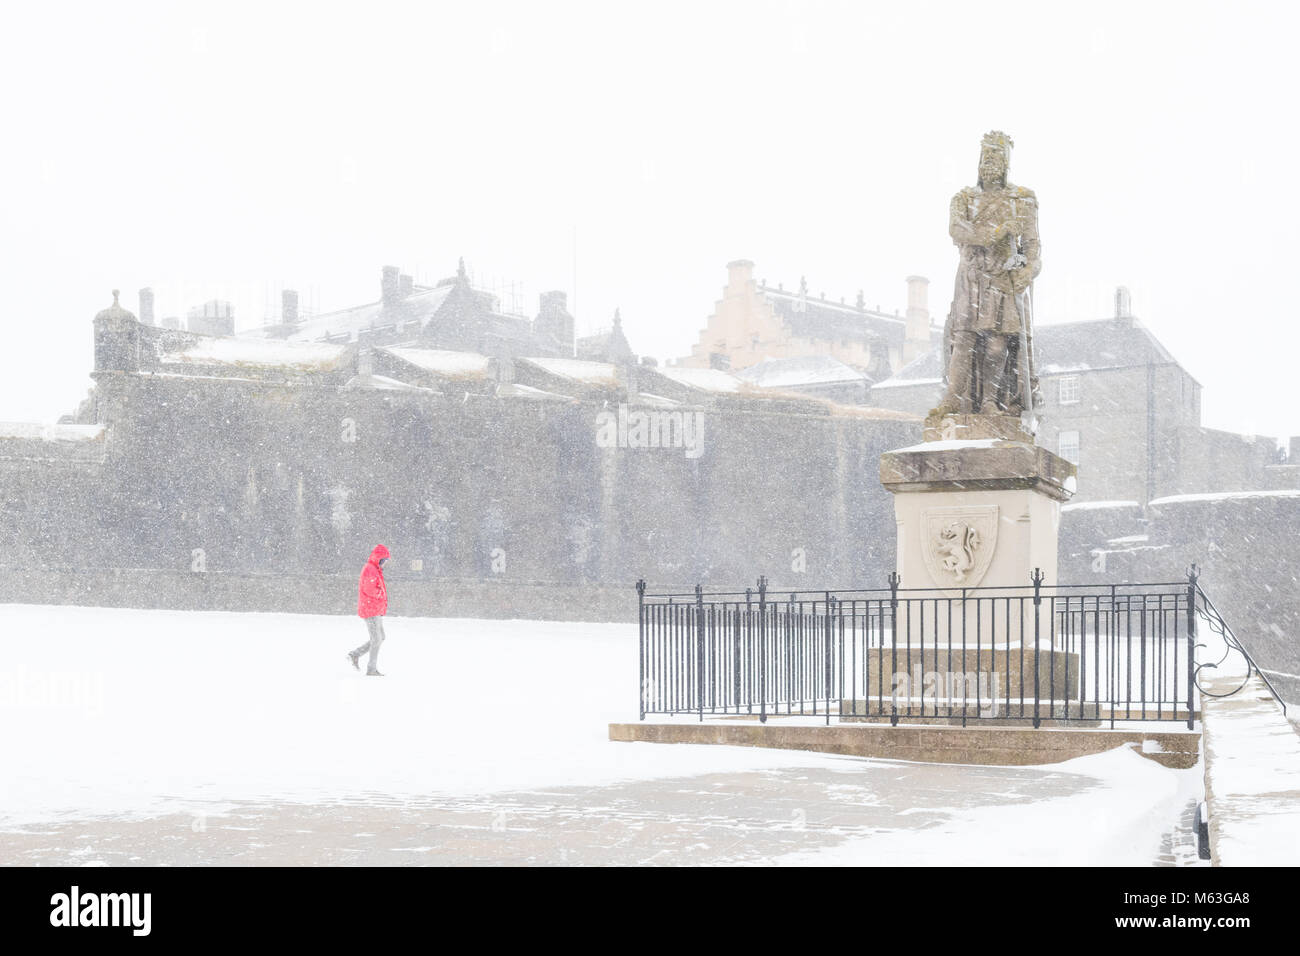 Il Castello di Stirling, Scozia, Regno Unito - 28 Febbraio 2018: Regno Unito - previsioni del tempo - il Castello di Stirling è chiuso oggi a causa di avverse condizioni atmosferiche come lo sono tutte le scuole di Stirlingshire Credito: Kay Roxby/Alamy Live News Foto Stock